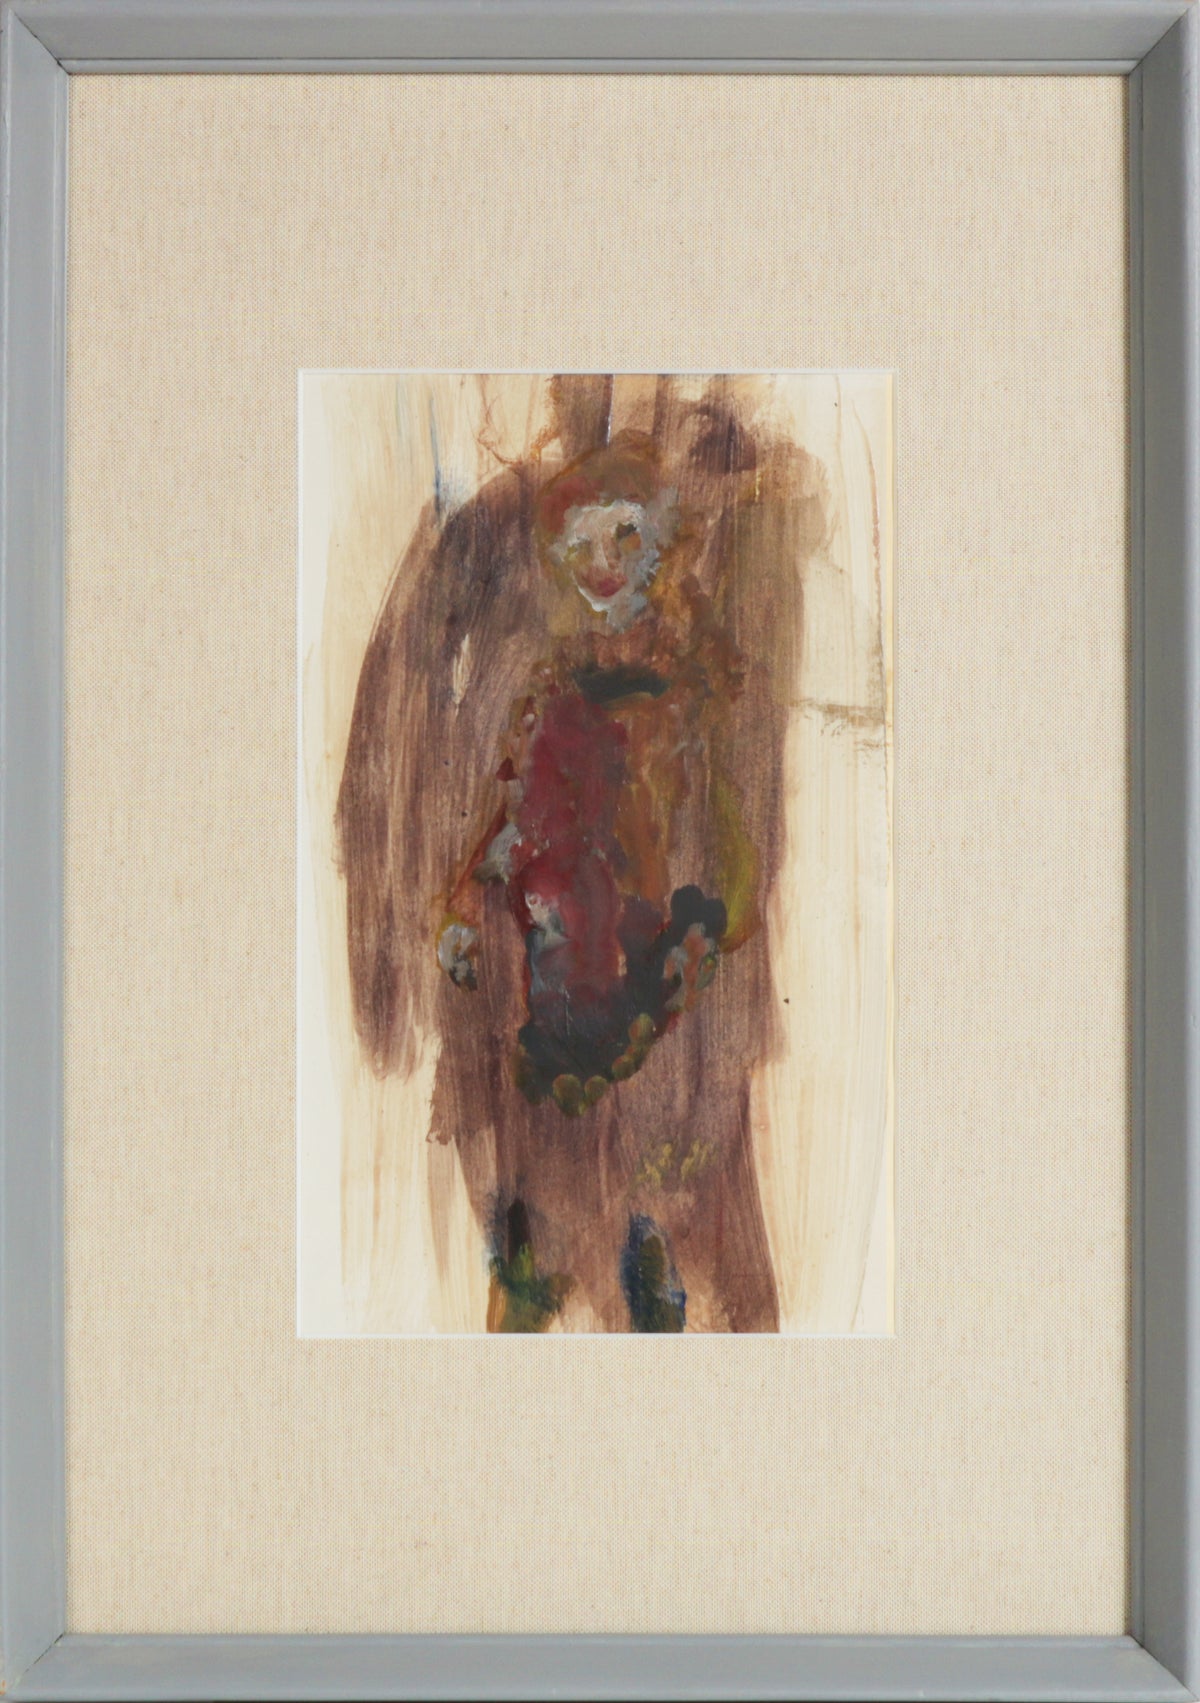 &lt;i&gt;Abstract Portrait of Madeline Gleason &lt;/i&gt;&lt;br&gt;1960s Bay Area Figurative Distemper&lt;br&gt;&lt;br&gt;#12705